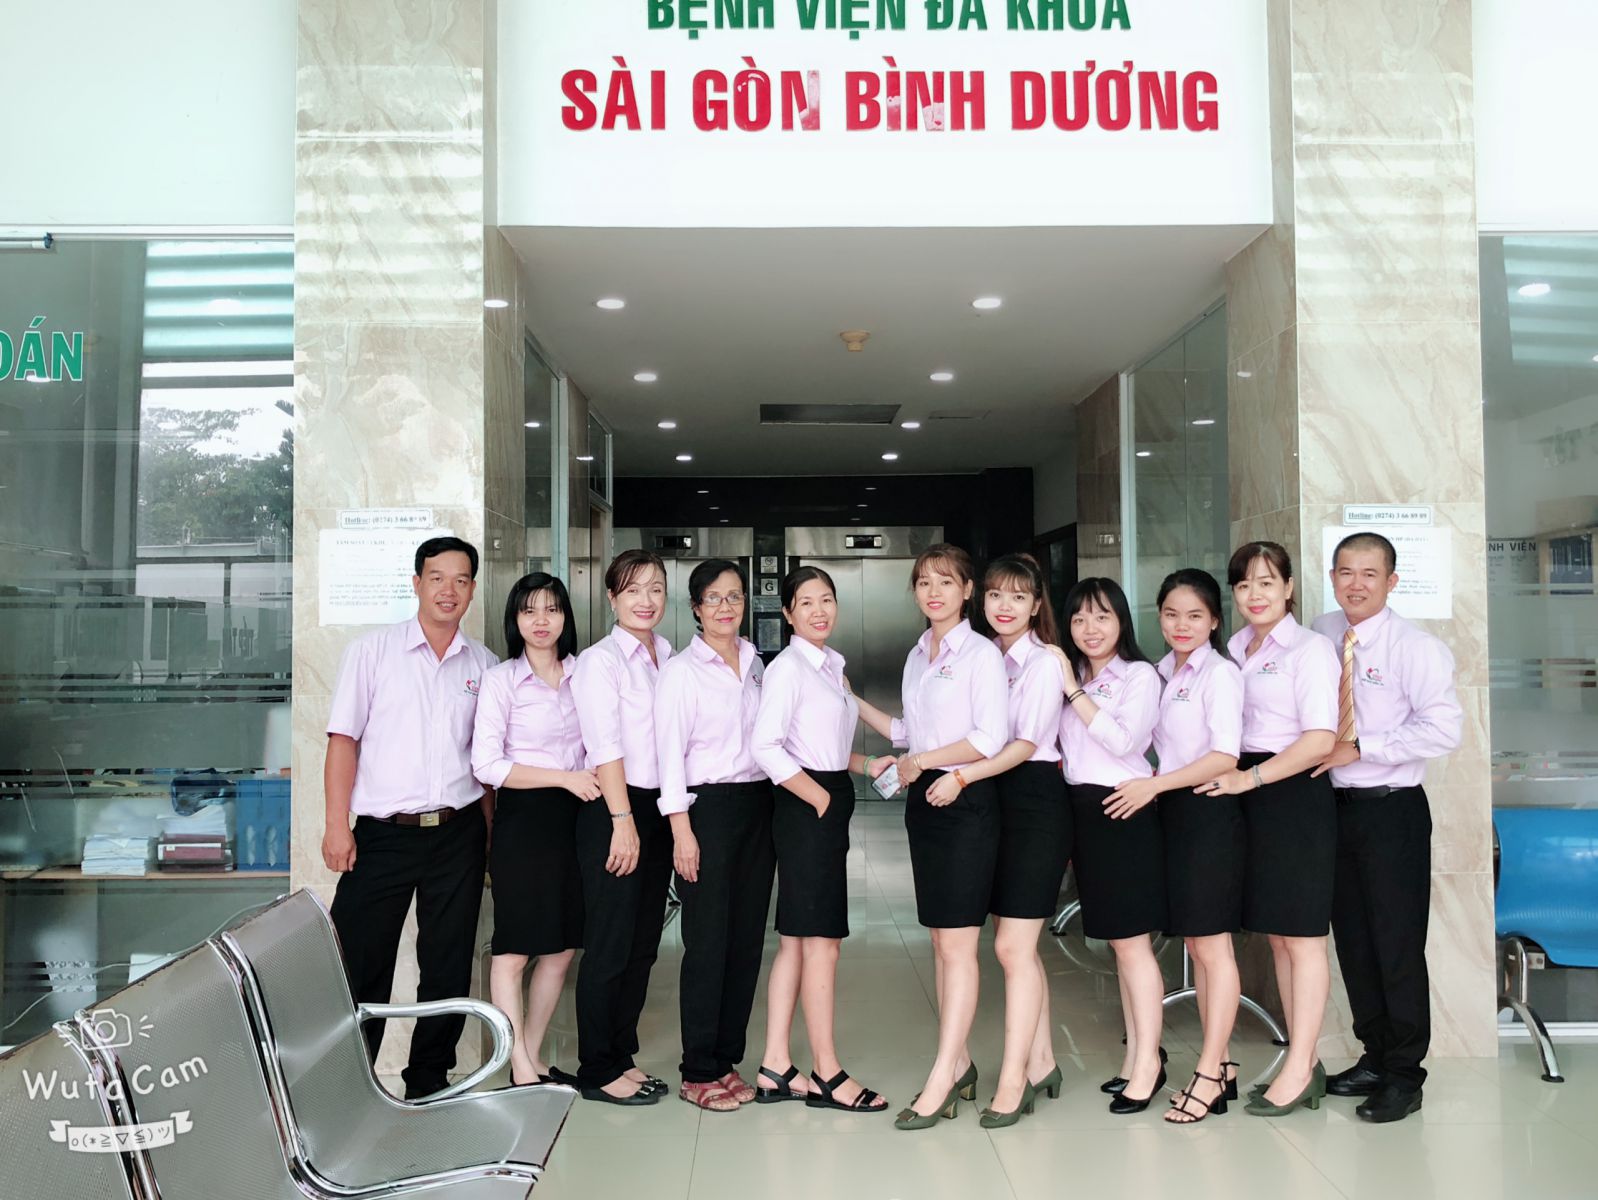 Bệnh viện Đa khoa Sài Gòn Bình Dương ảnh 2